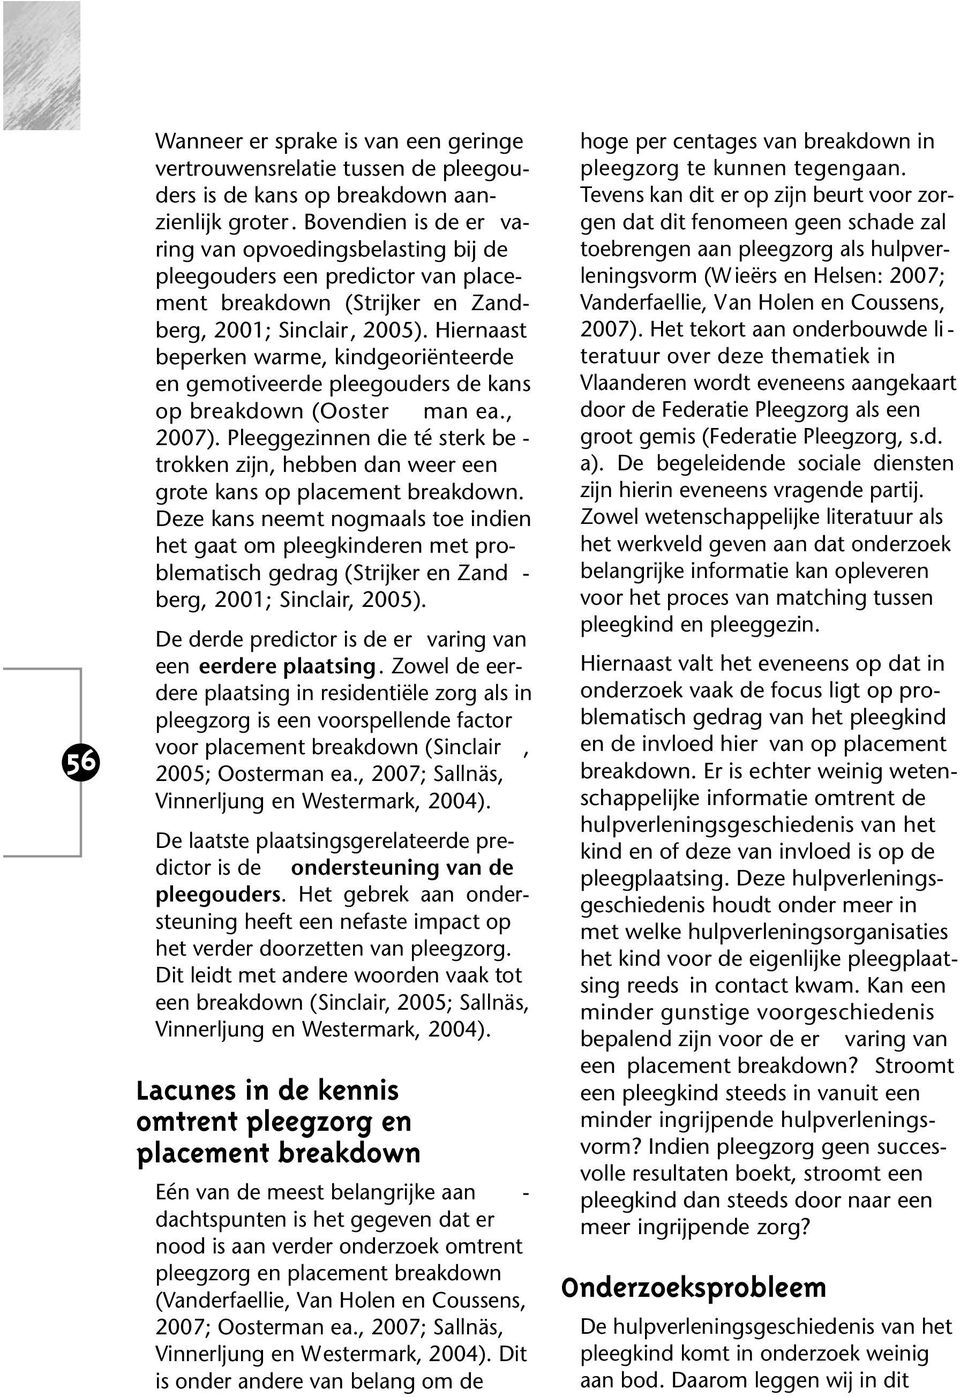 Hiernaast be perken warme, kindgeoriënteerde en gemotiveerde pleegouders de kans op breakdown (Ooster man ea., 2007).